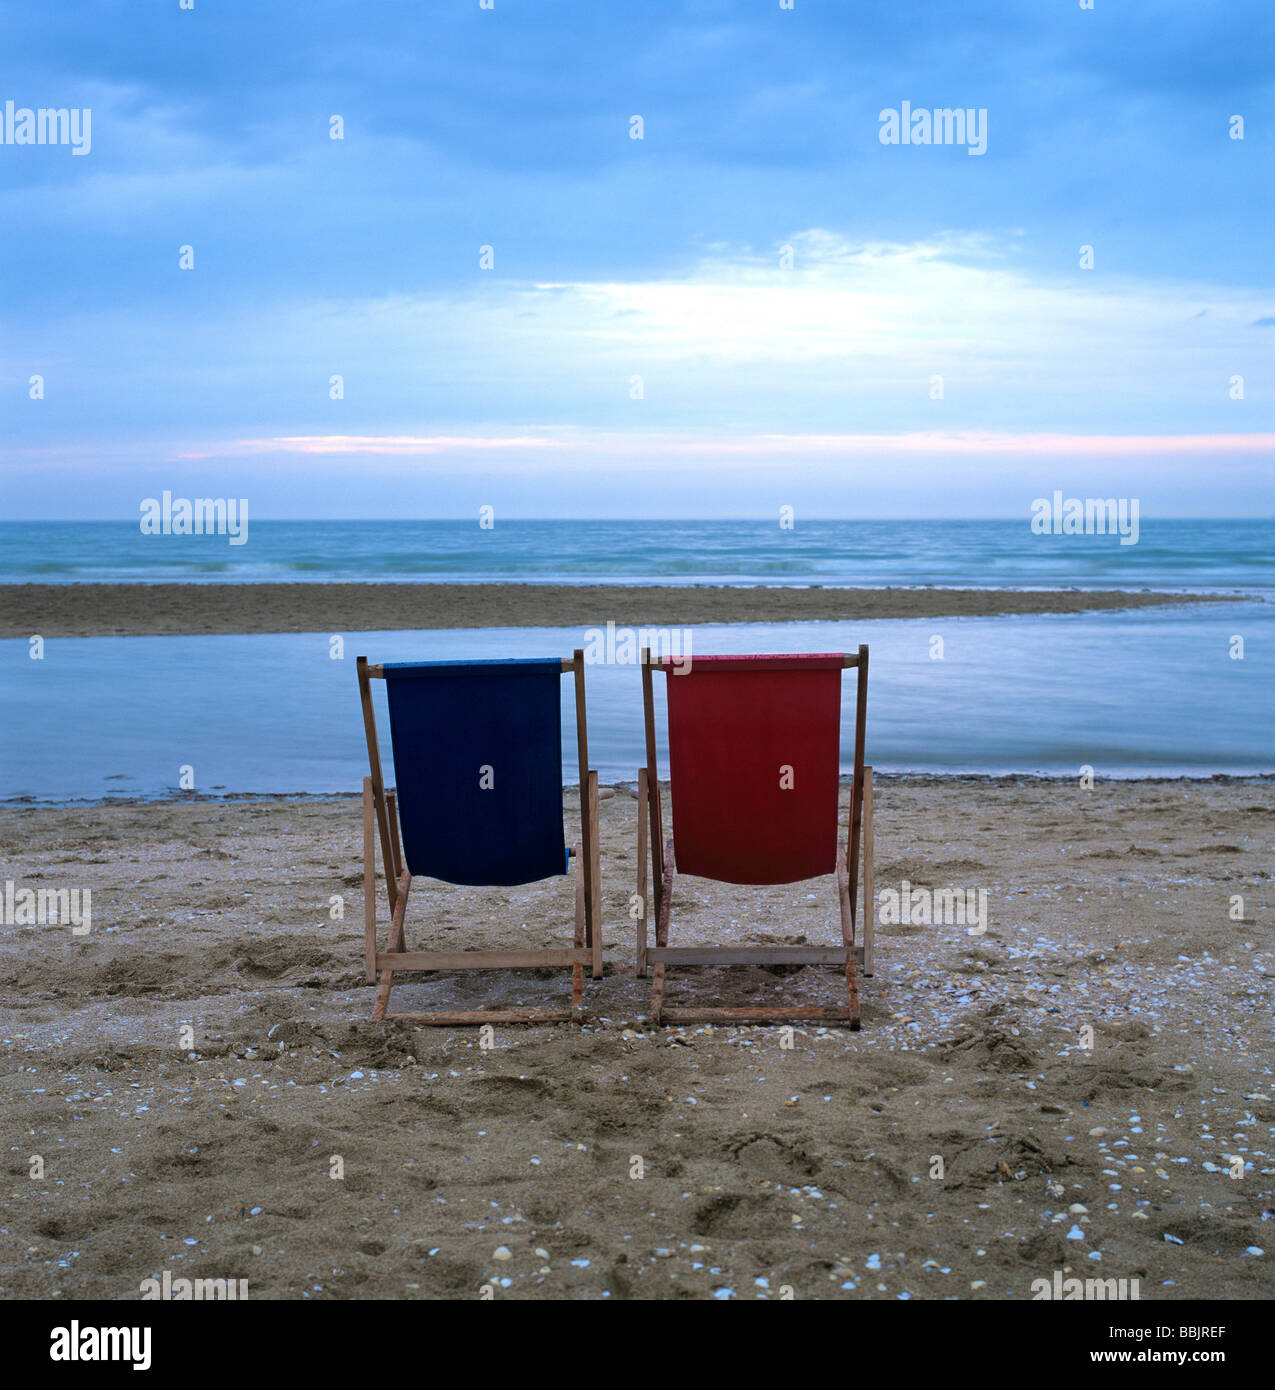 Deux transats en bois sur la plage en face de la mer au coucher du soleil / crépuscule Banque D'Images